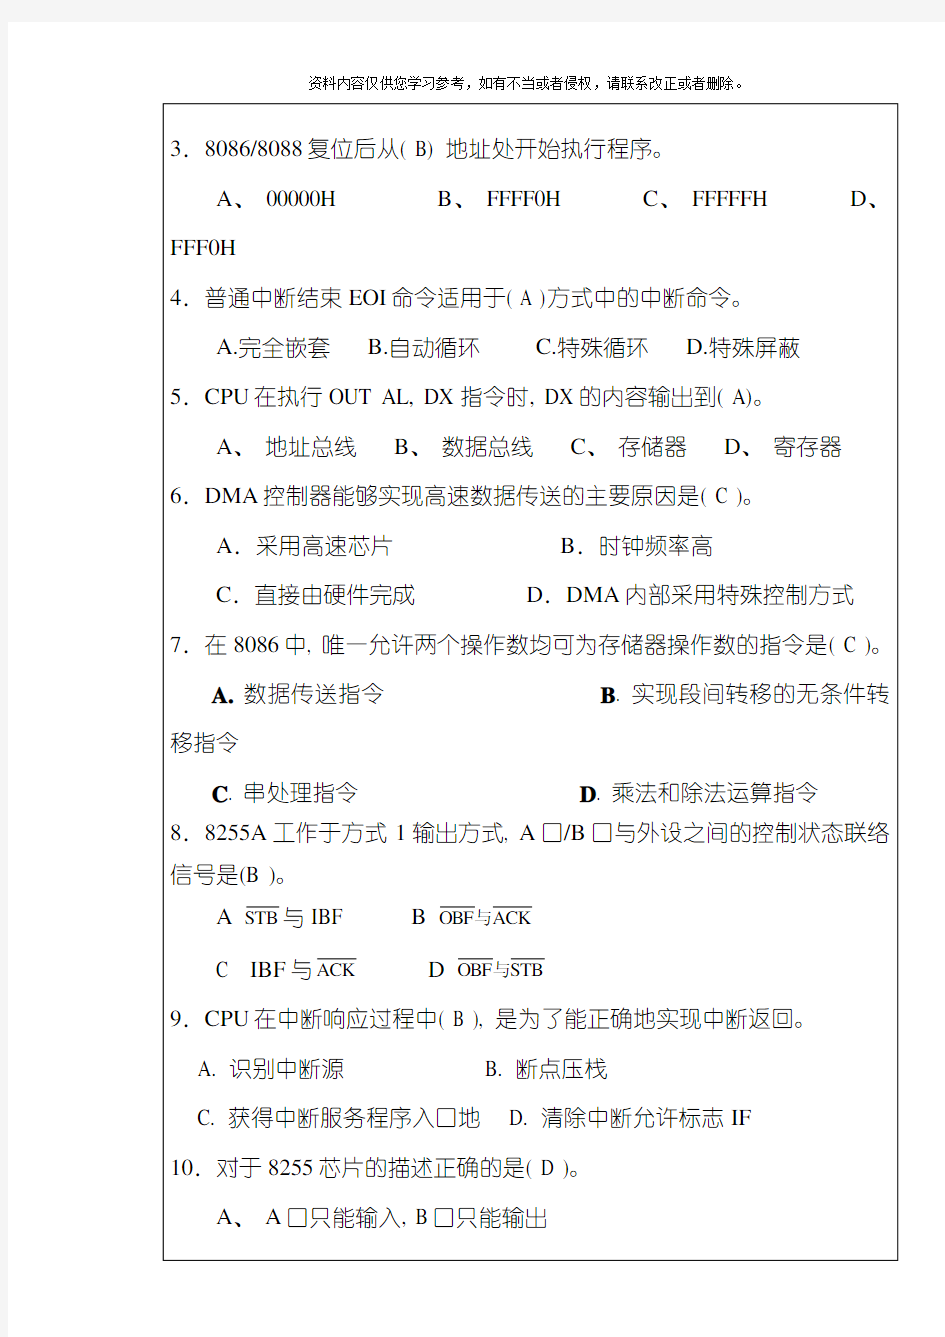 湘潭大学考试试卷标准格式模板